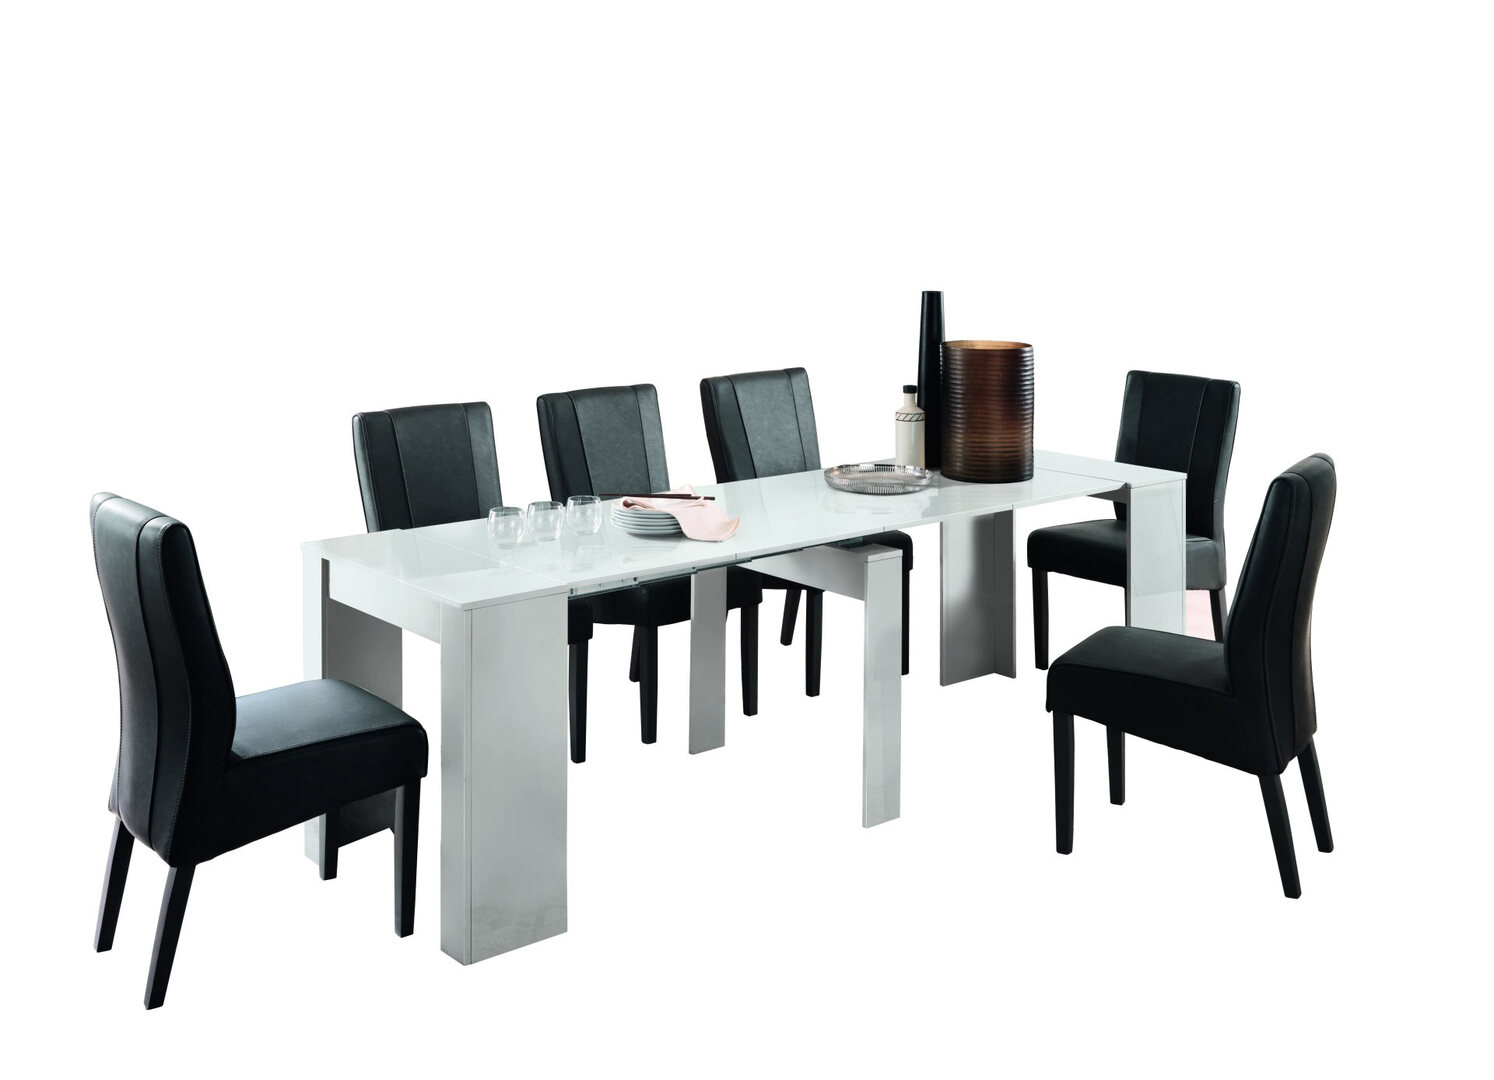 Console design ultra-tendance au meilleur prix, Console extensible Design  BALTO avec tables dépliables/chaises intégrées Blanc Mat/Structure Blanc